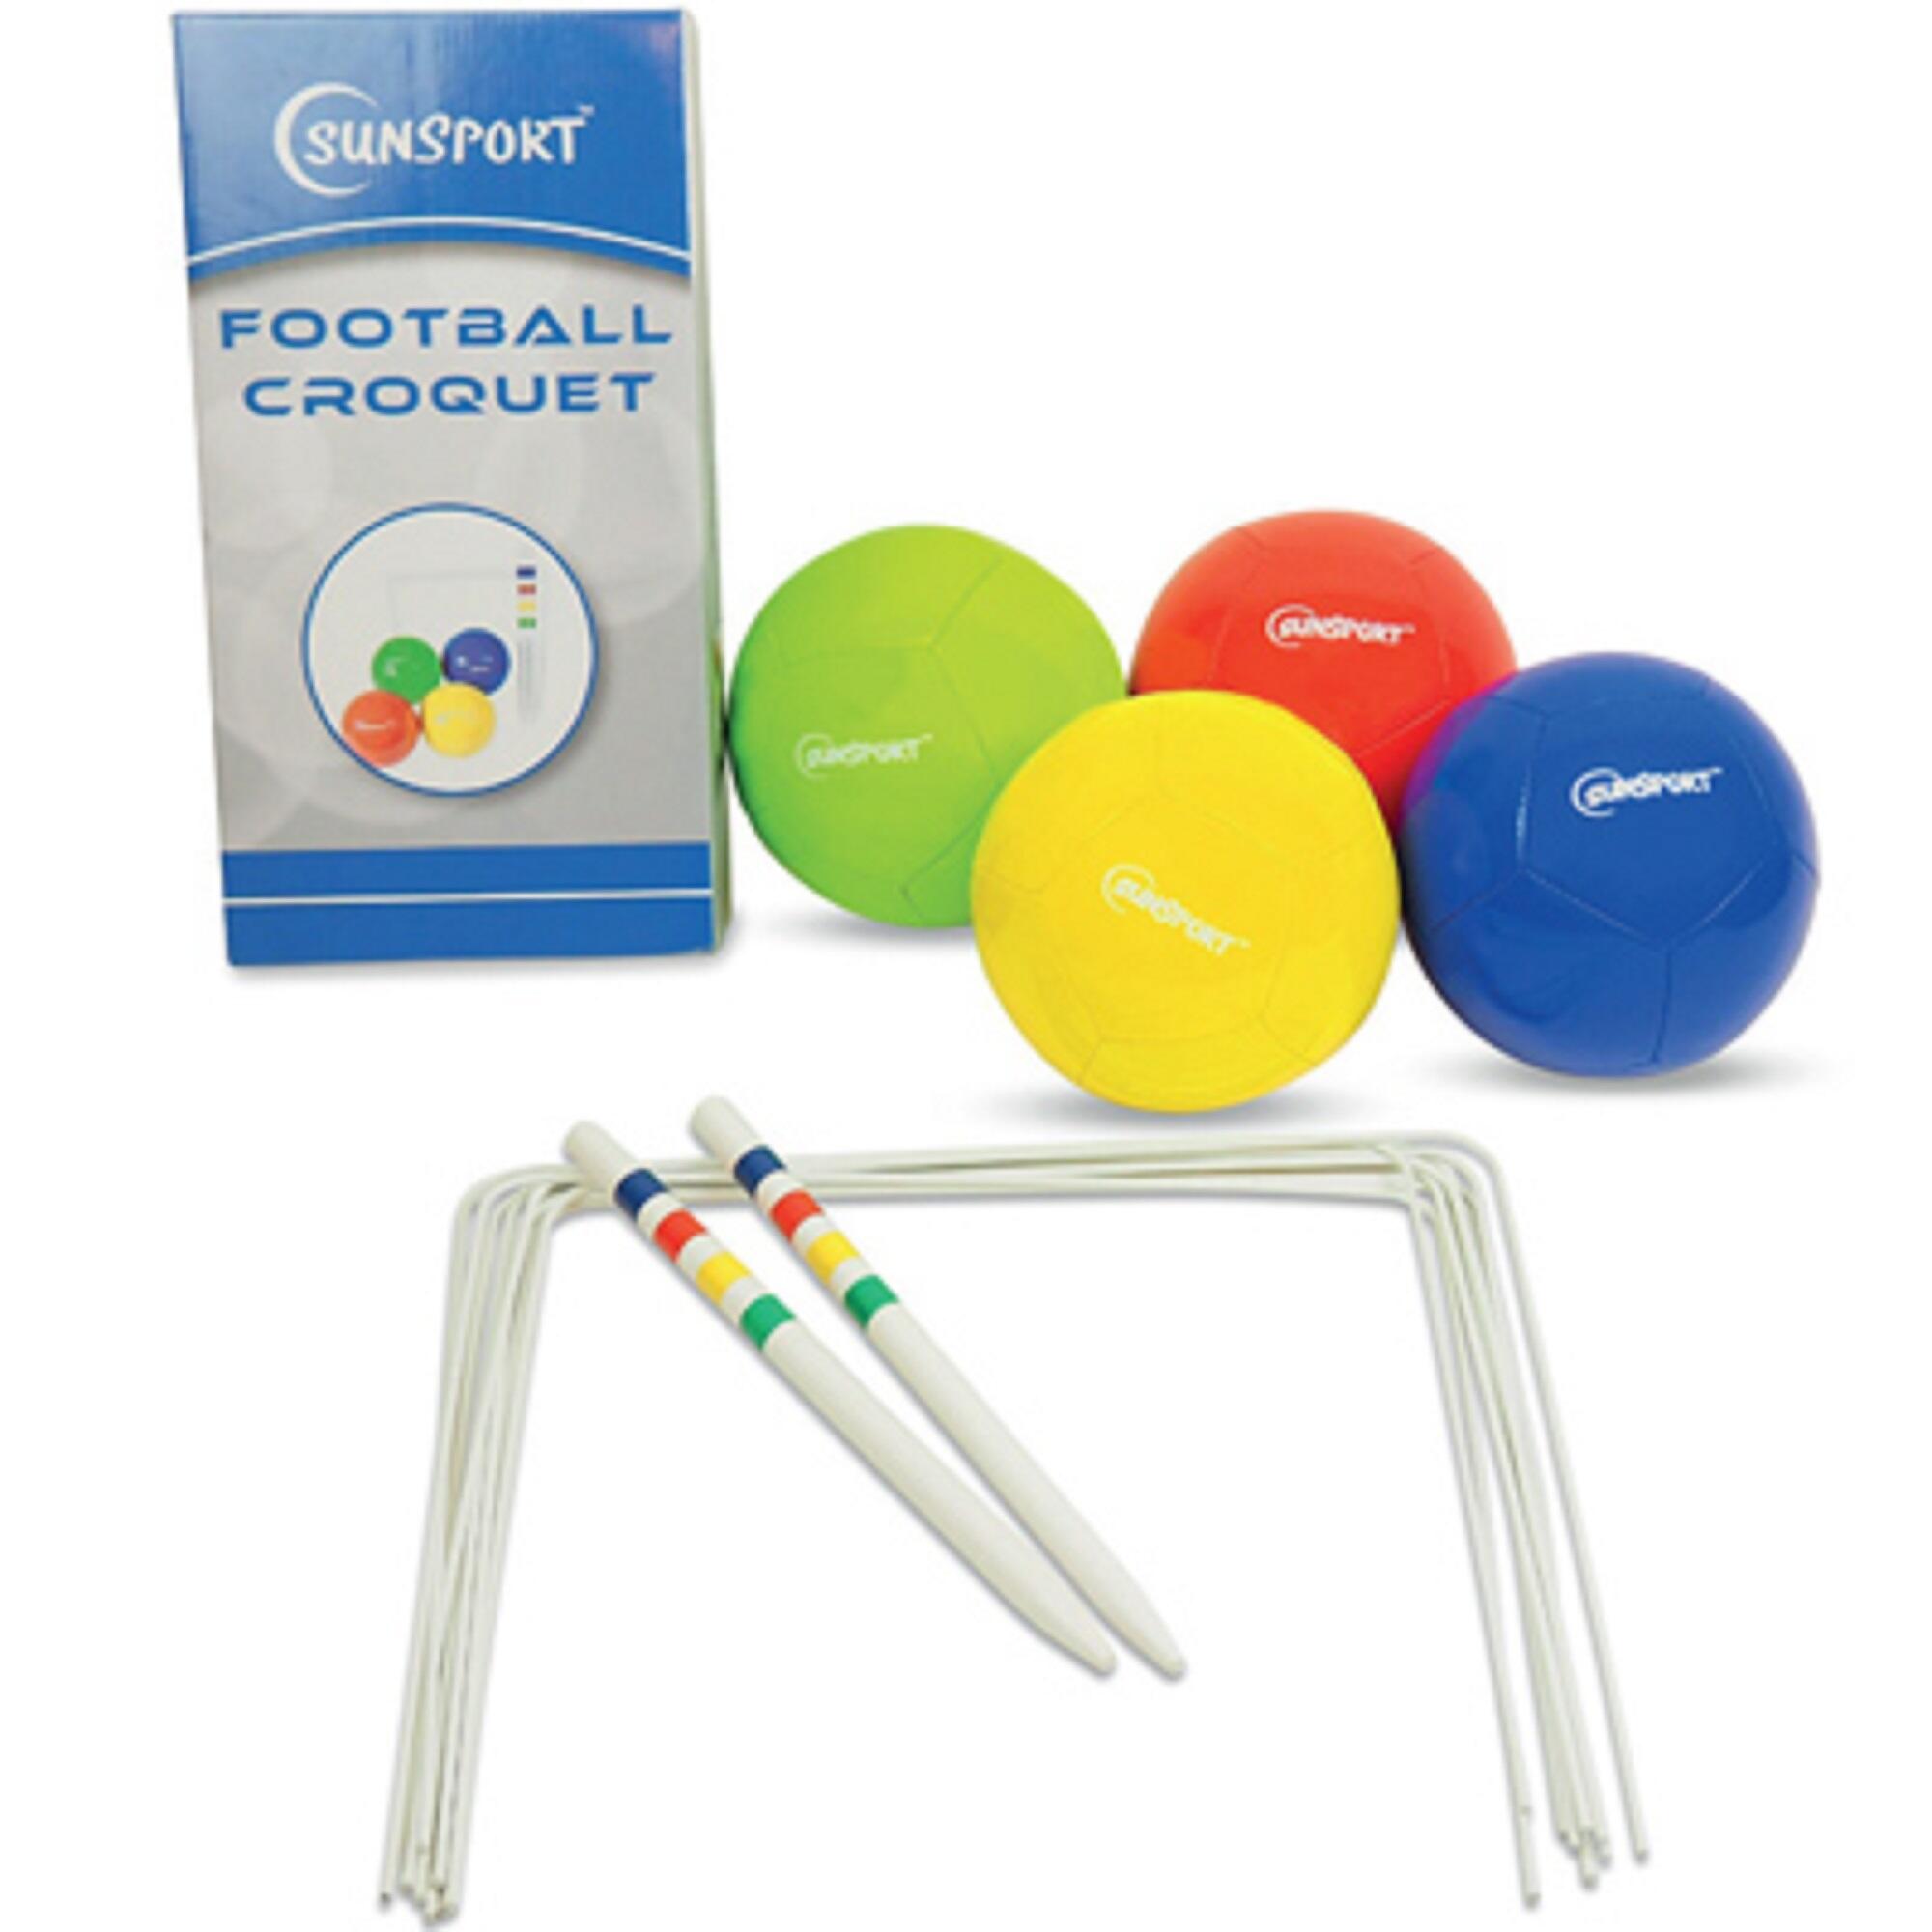 Football Croquet